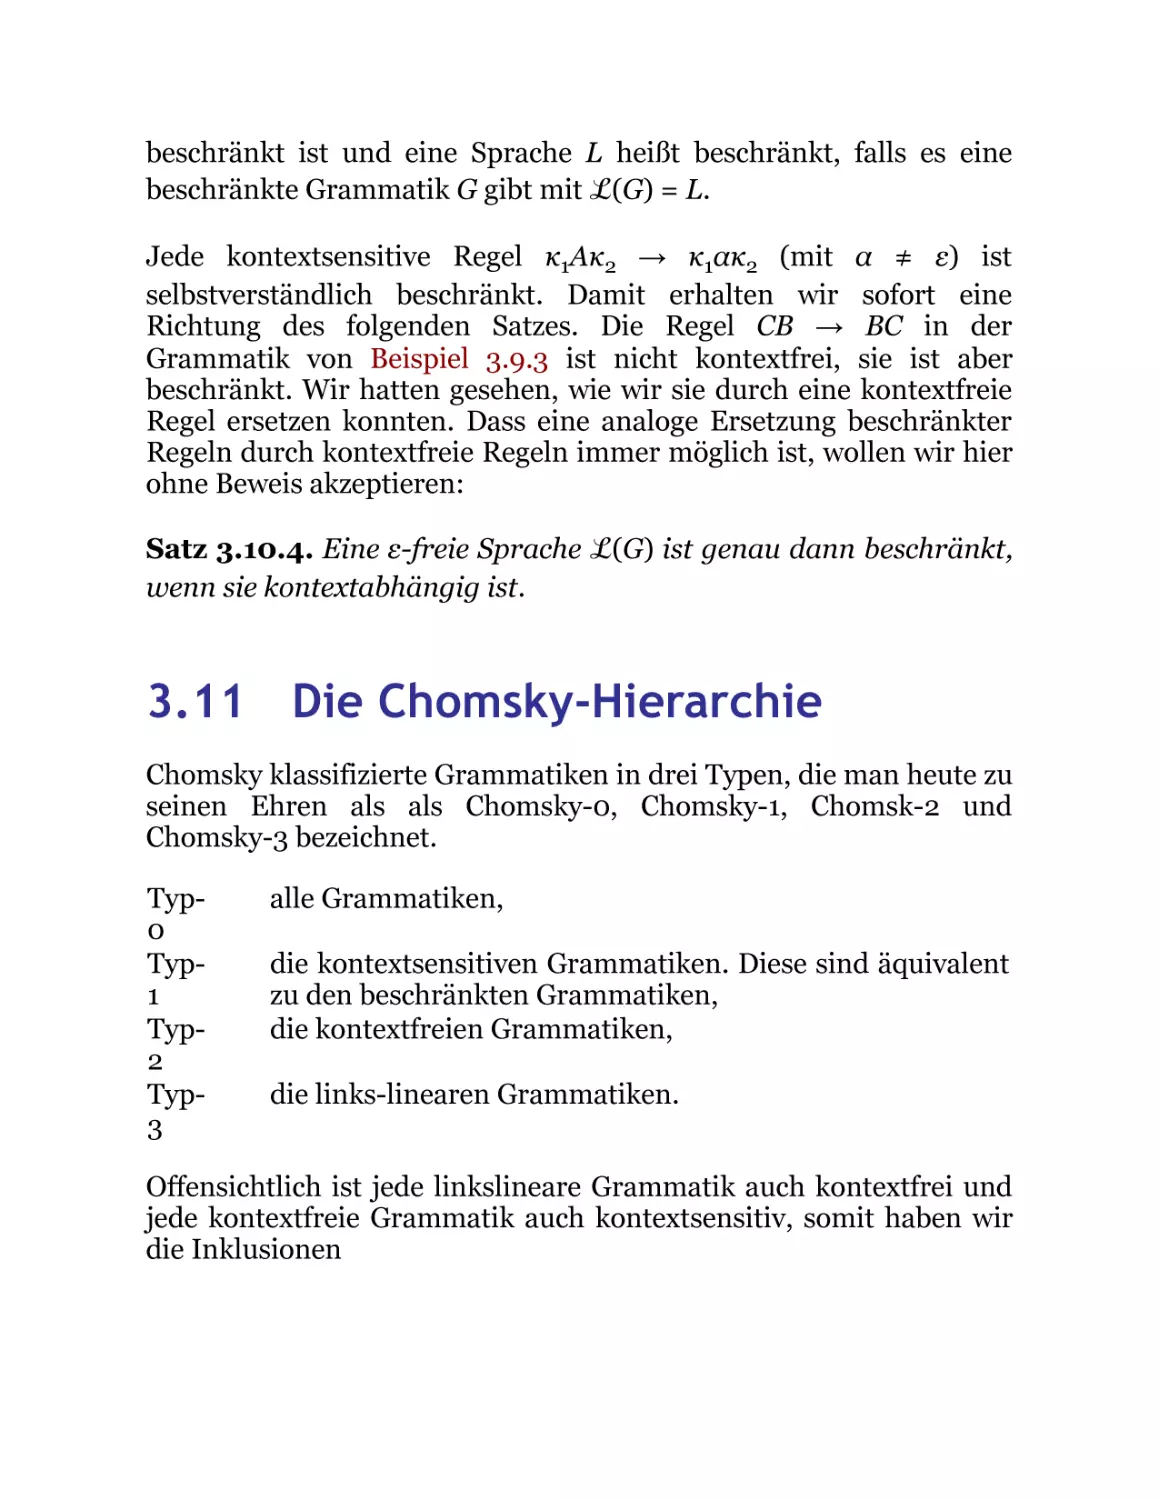 3.11 Die Chomsky-Hierarchie